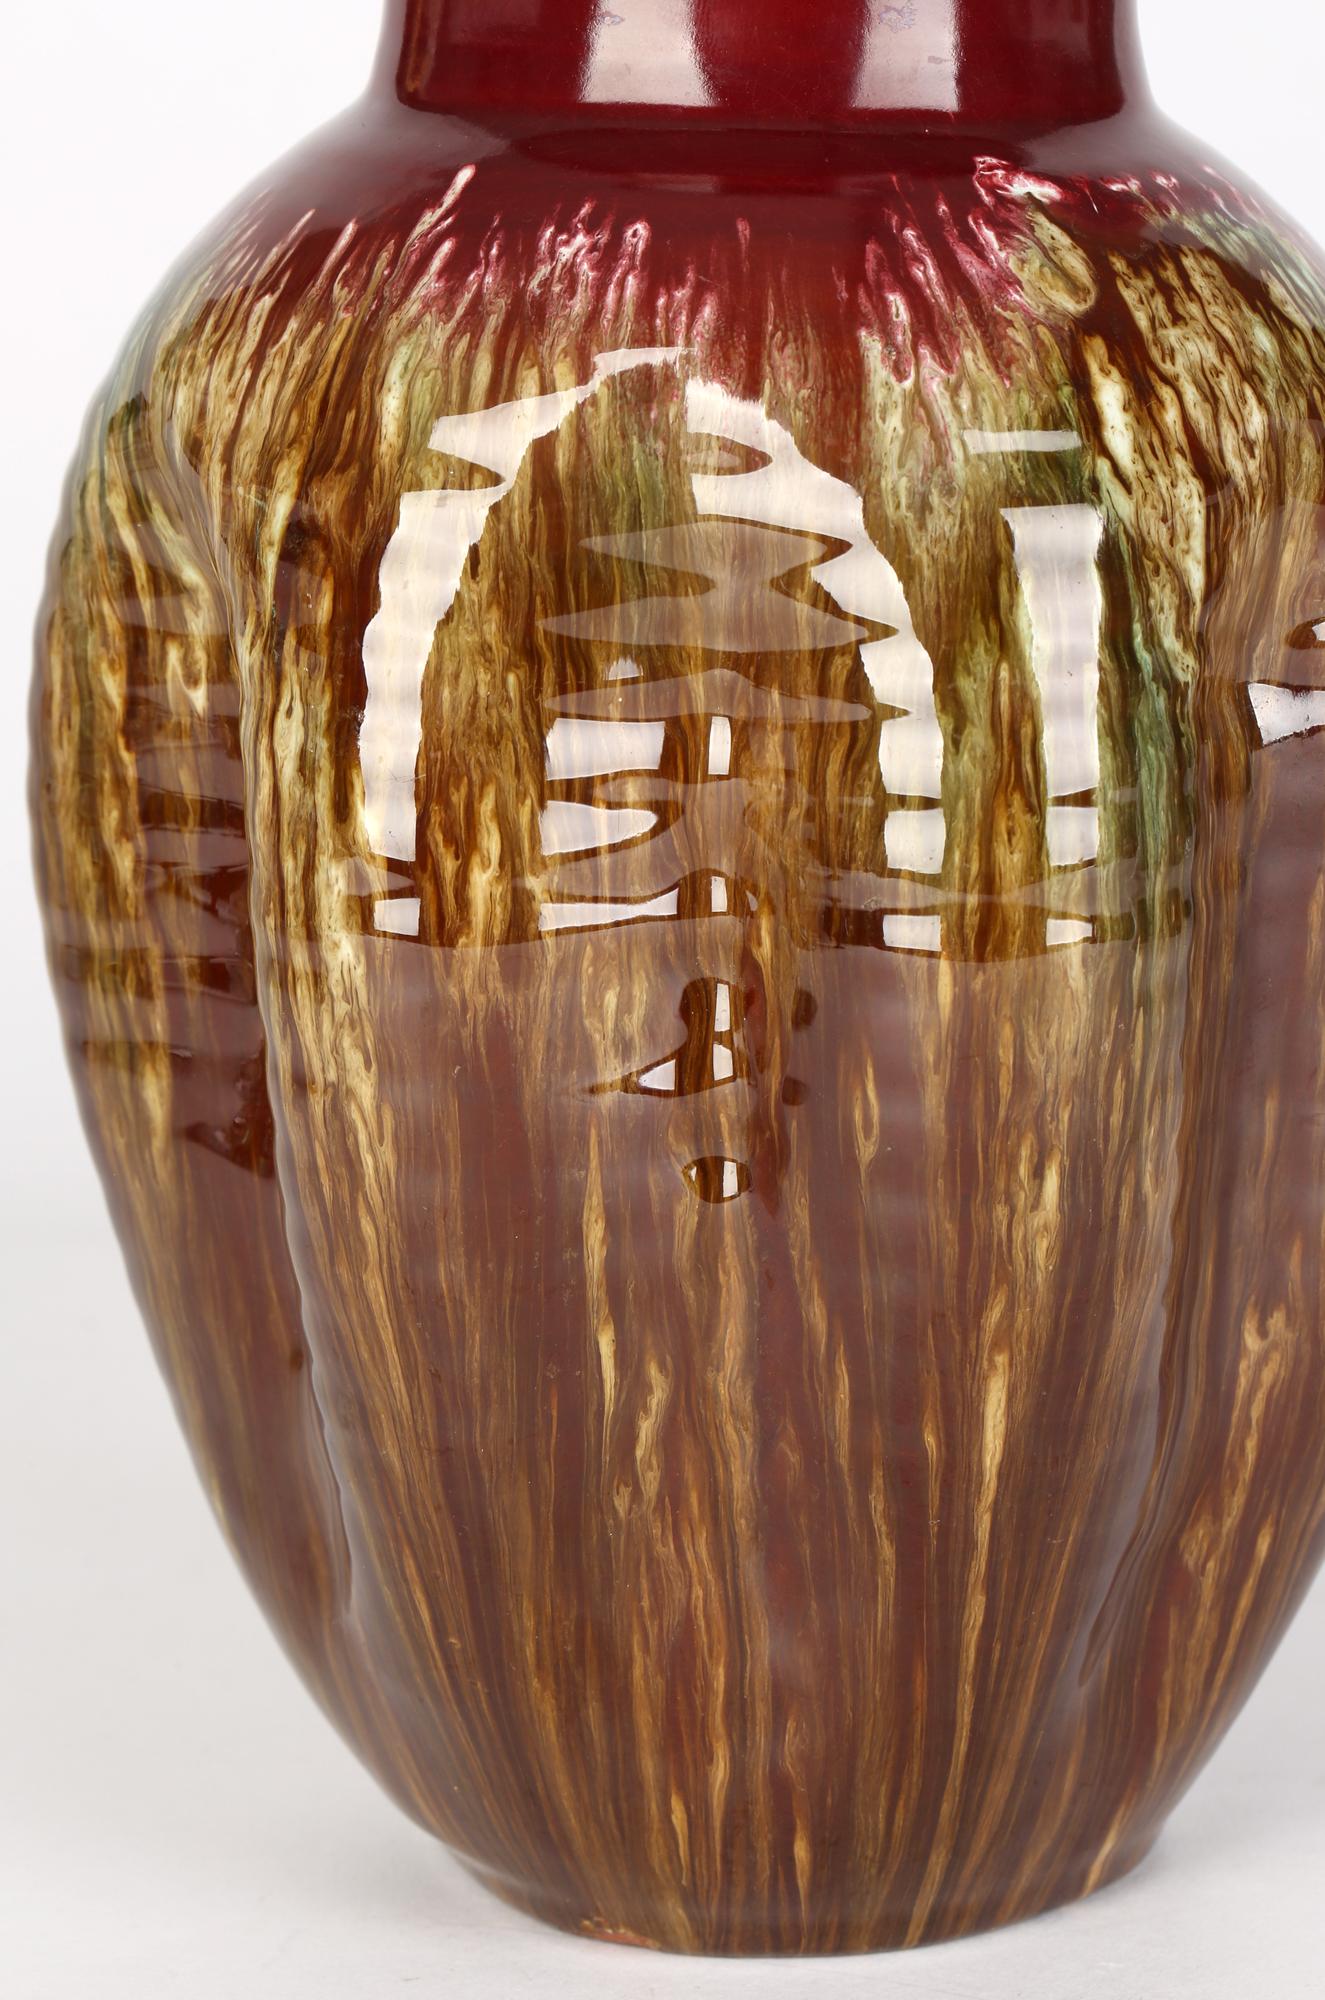 Christopher Dresser Linthorpe Pinched Streak Glazed Art Pottery Vase For Sale 5